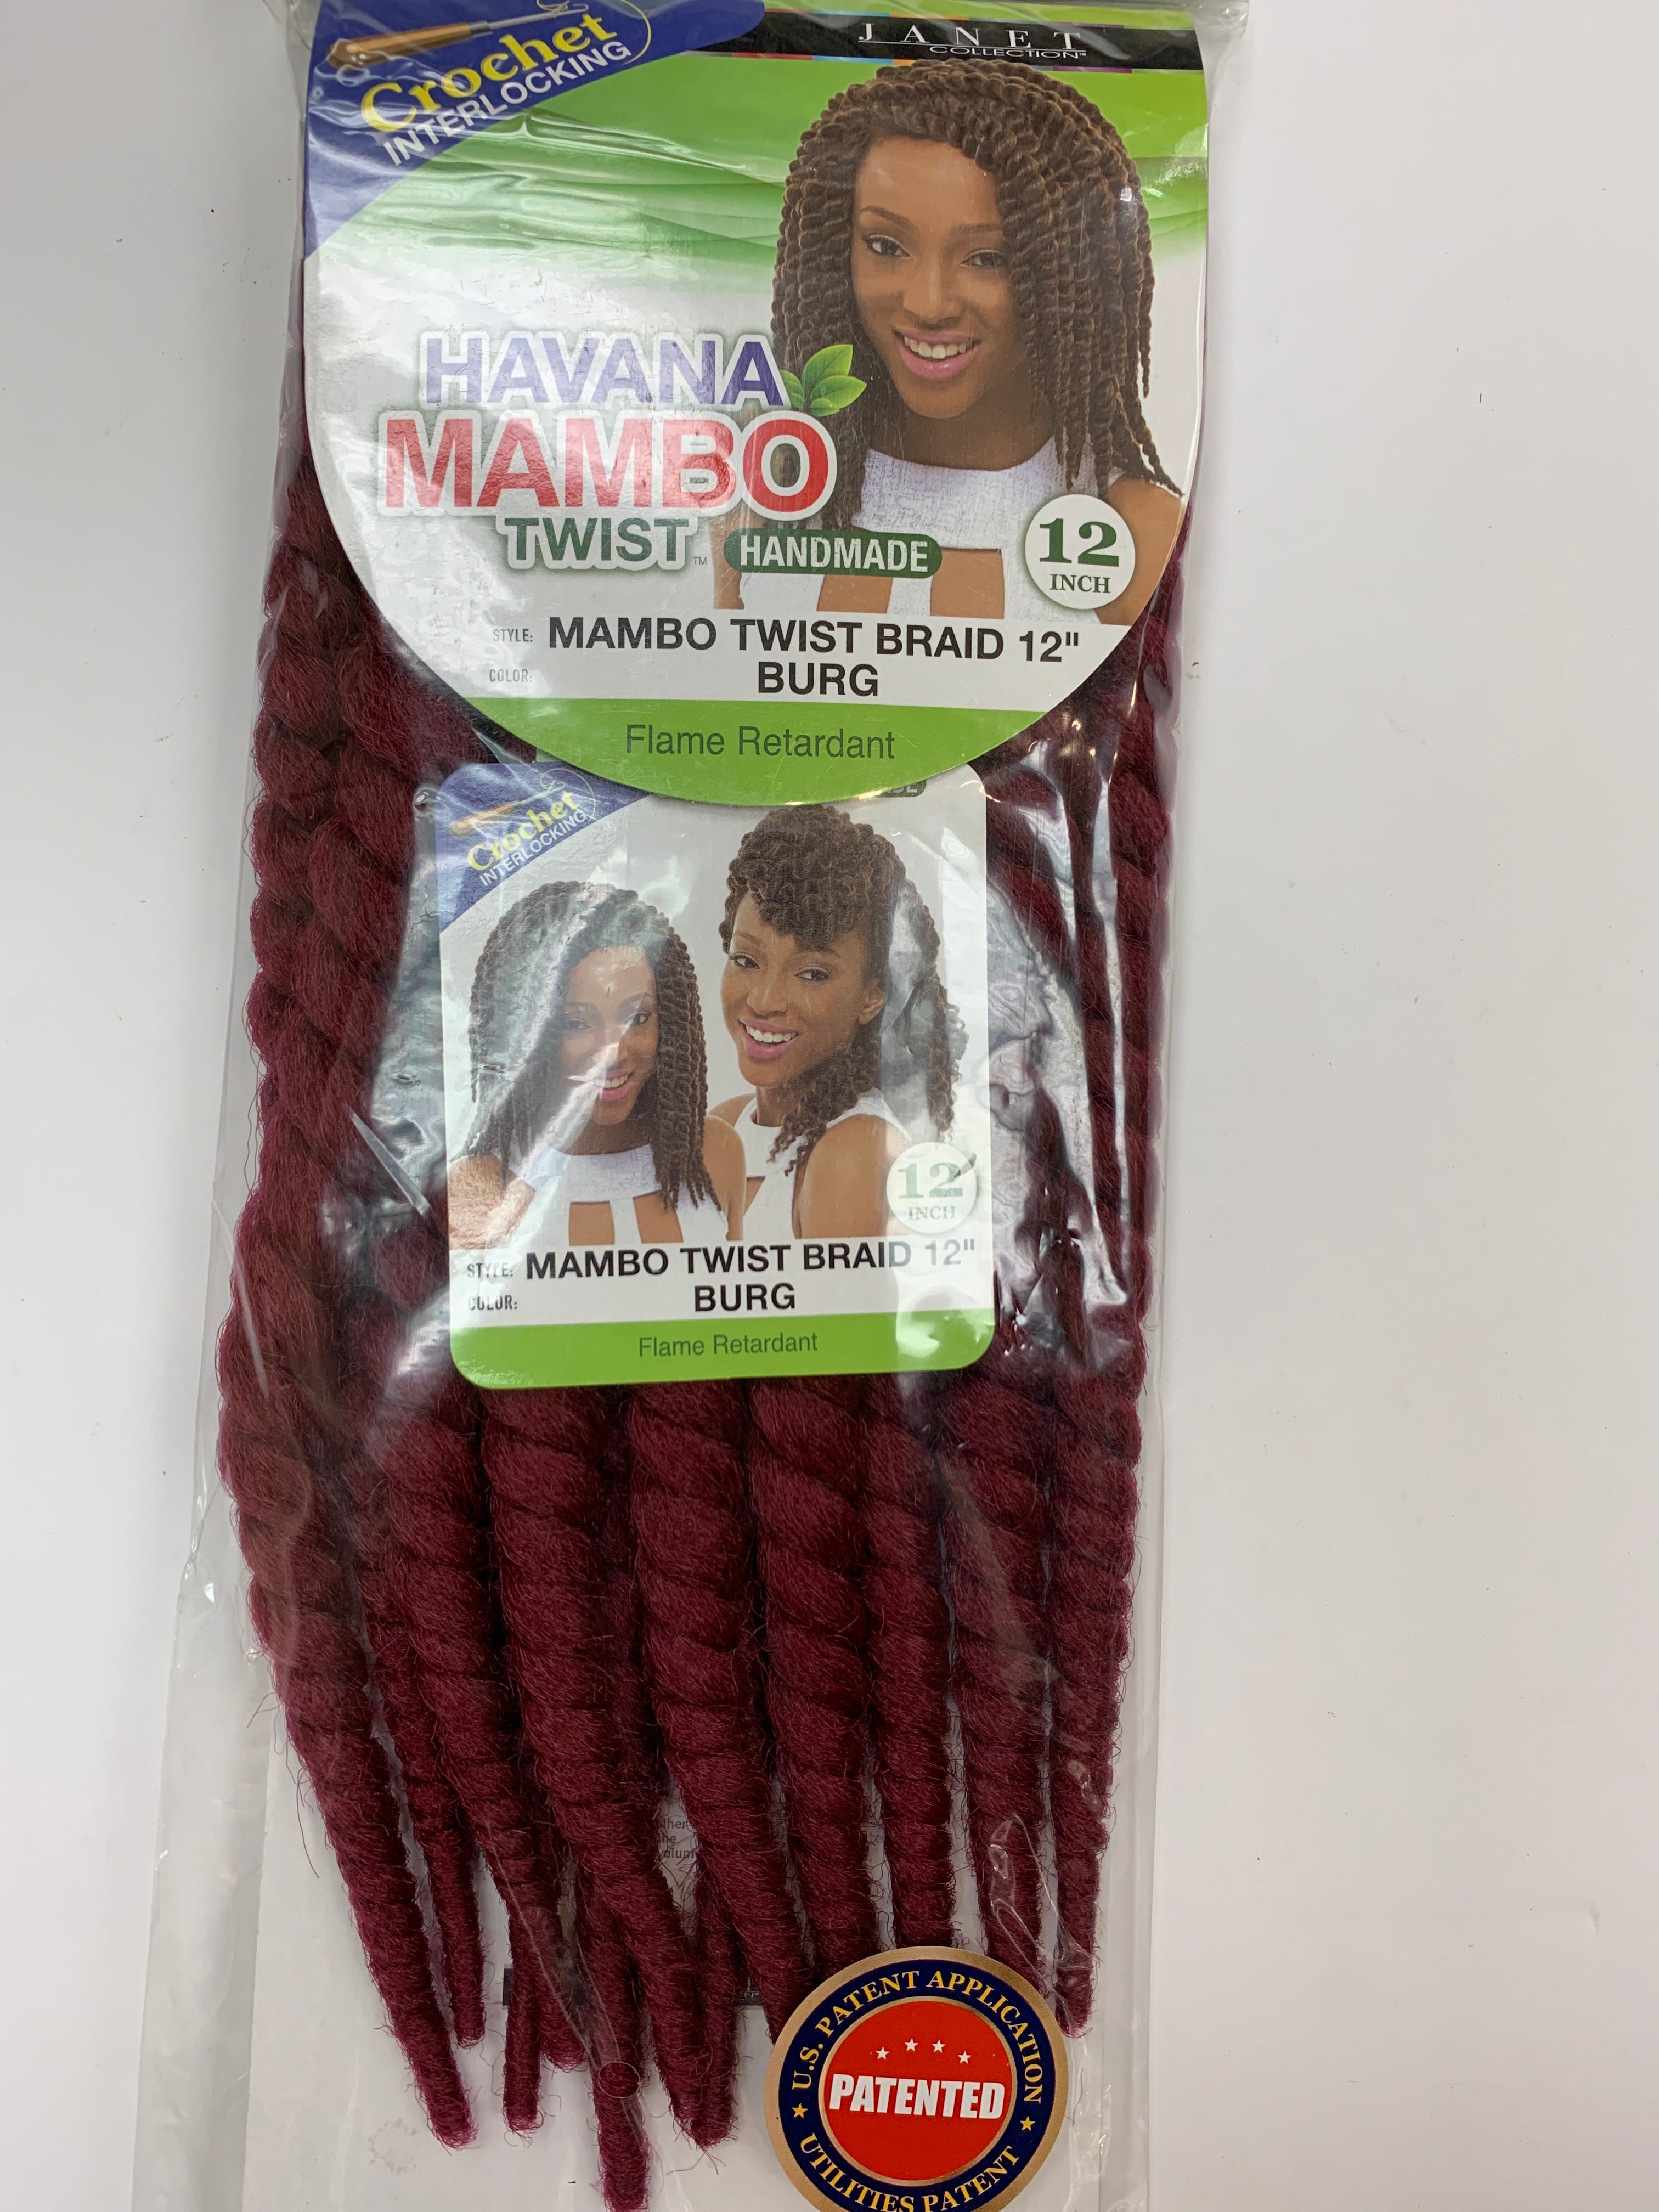 Janet mambo twist braid 12”